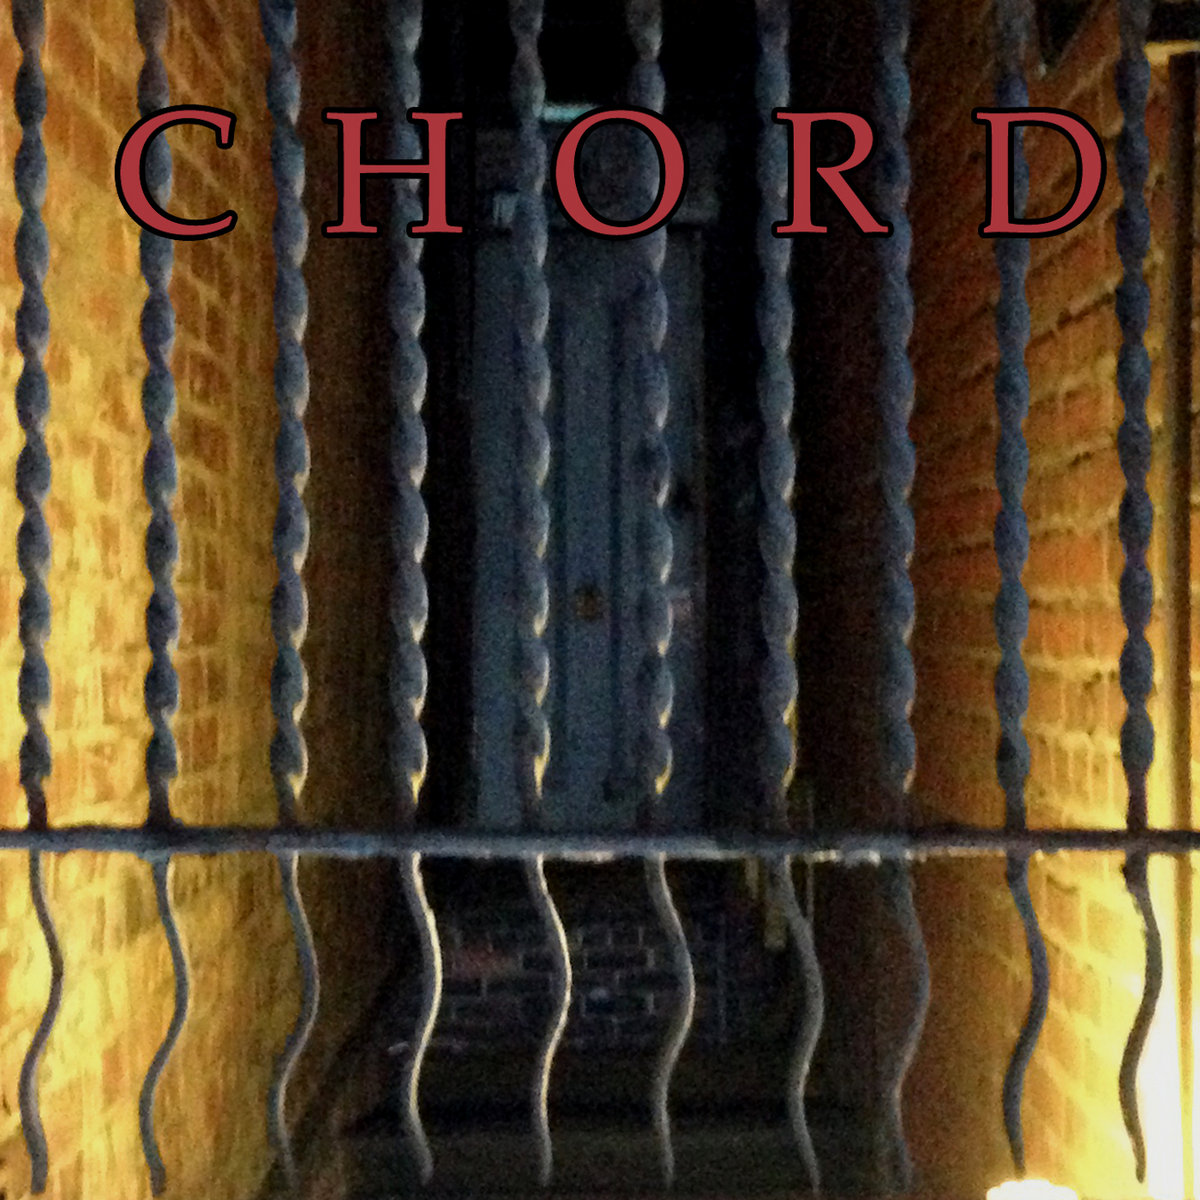 Chord — Chord IV